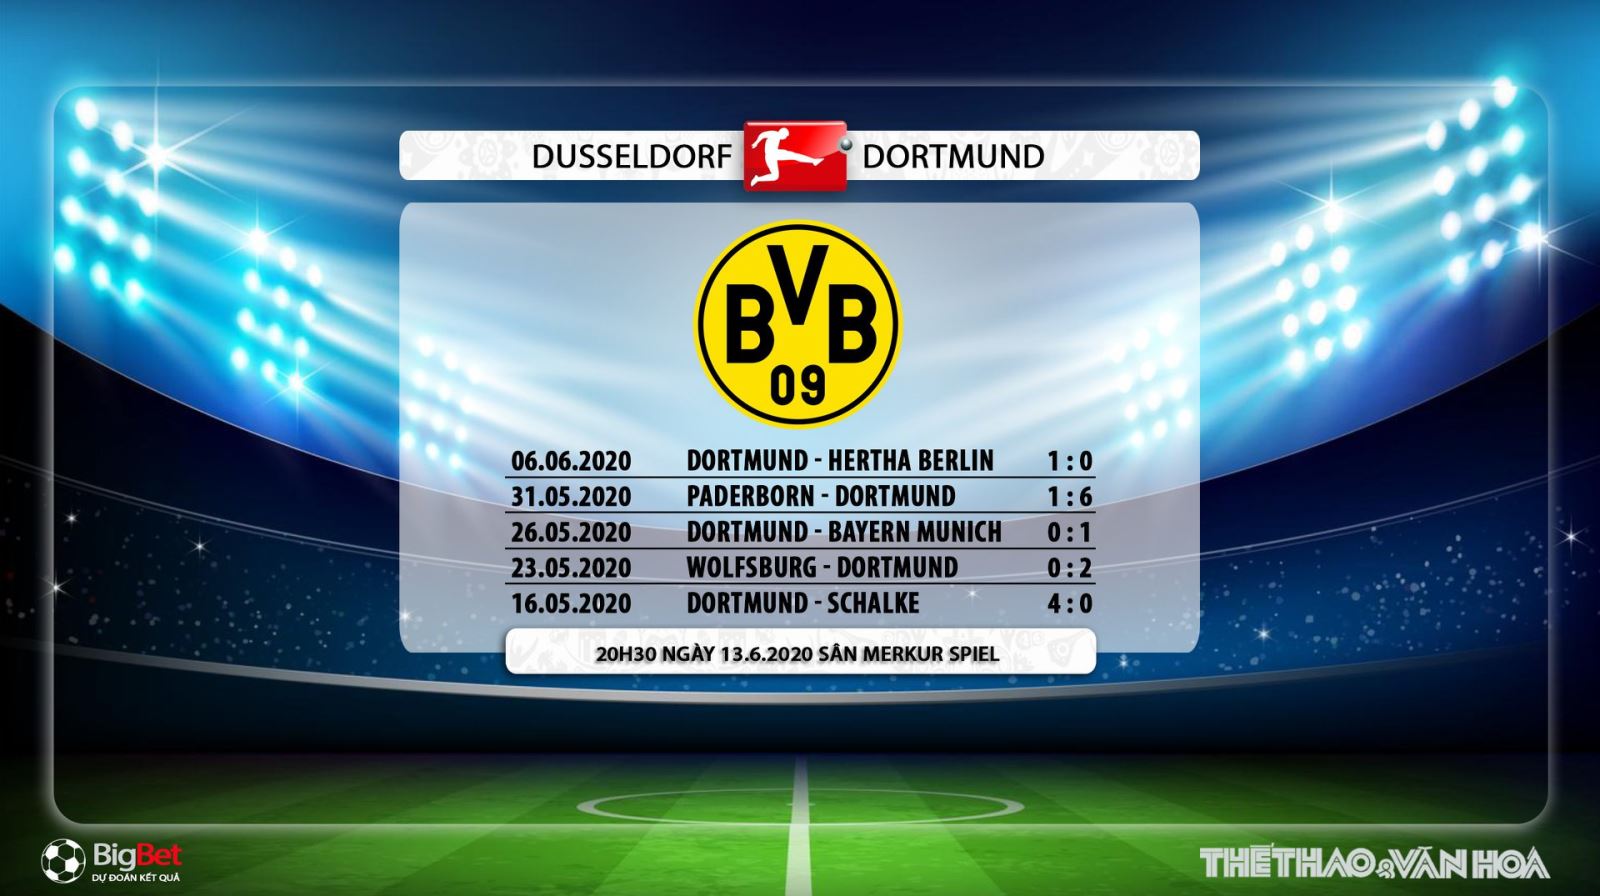 Dusseldorf vs Dortmund, Dortmund, Dusseldorf, dự đoán tỉ số, nhận định, soi kèo, kèo bóng đá